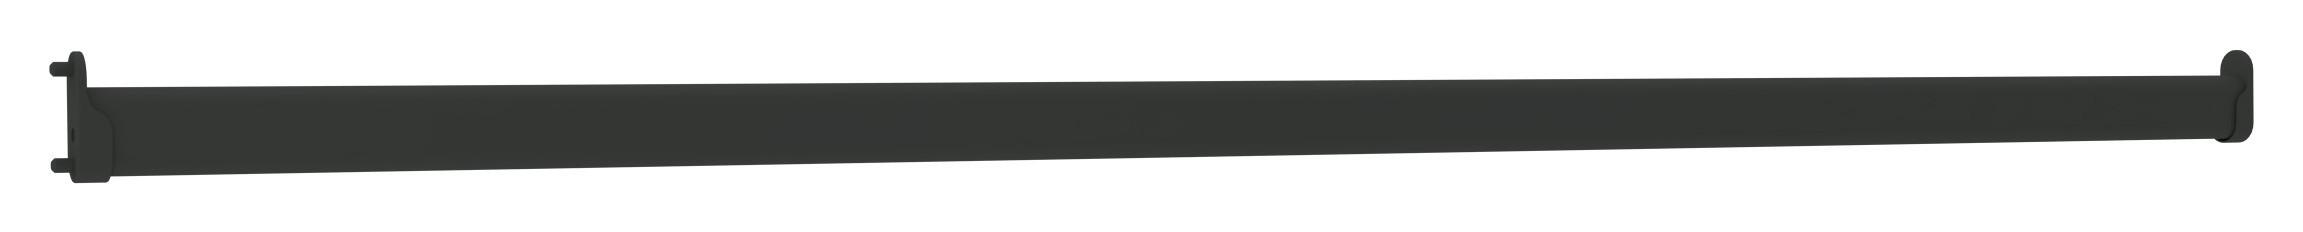 Kleiderstange Unit L: 87 cm Metall Anthrazit inkl. Halter - Anthrazit, MODERN, Metall (86,9cm) - Ondega